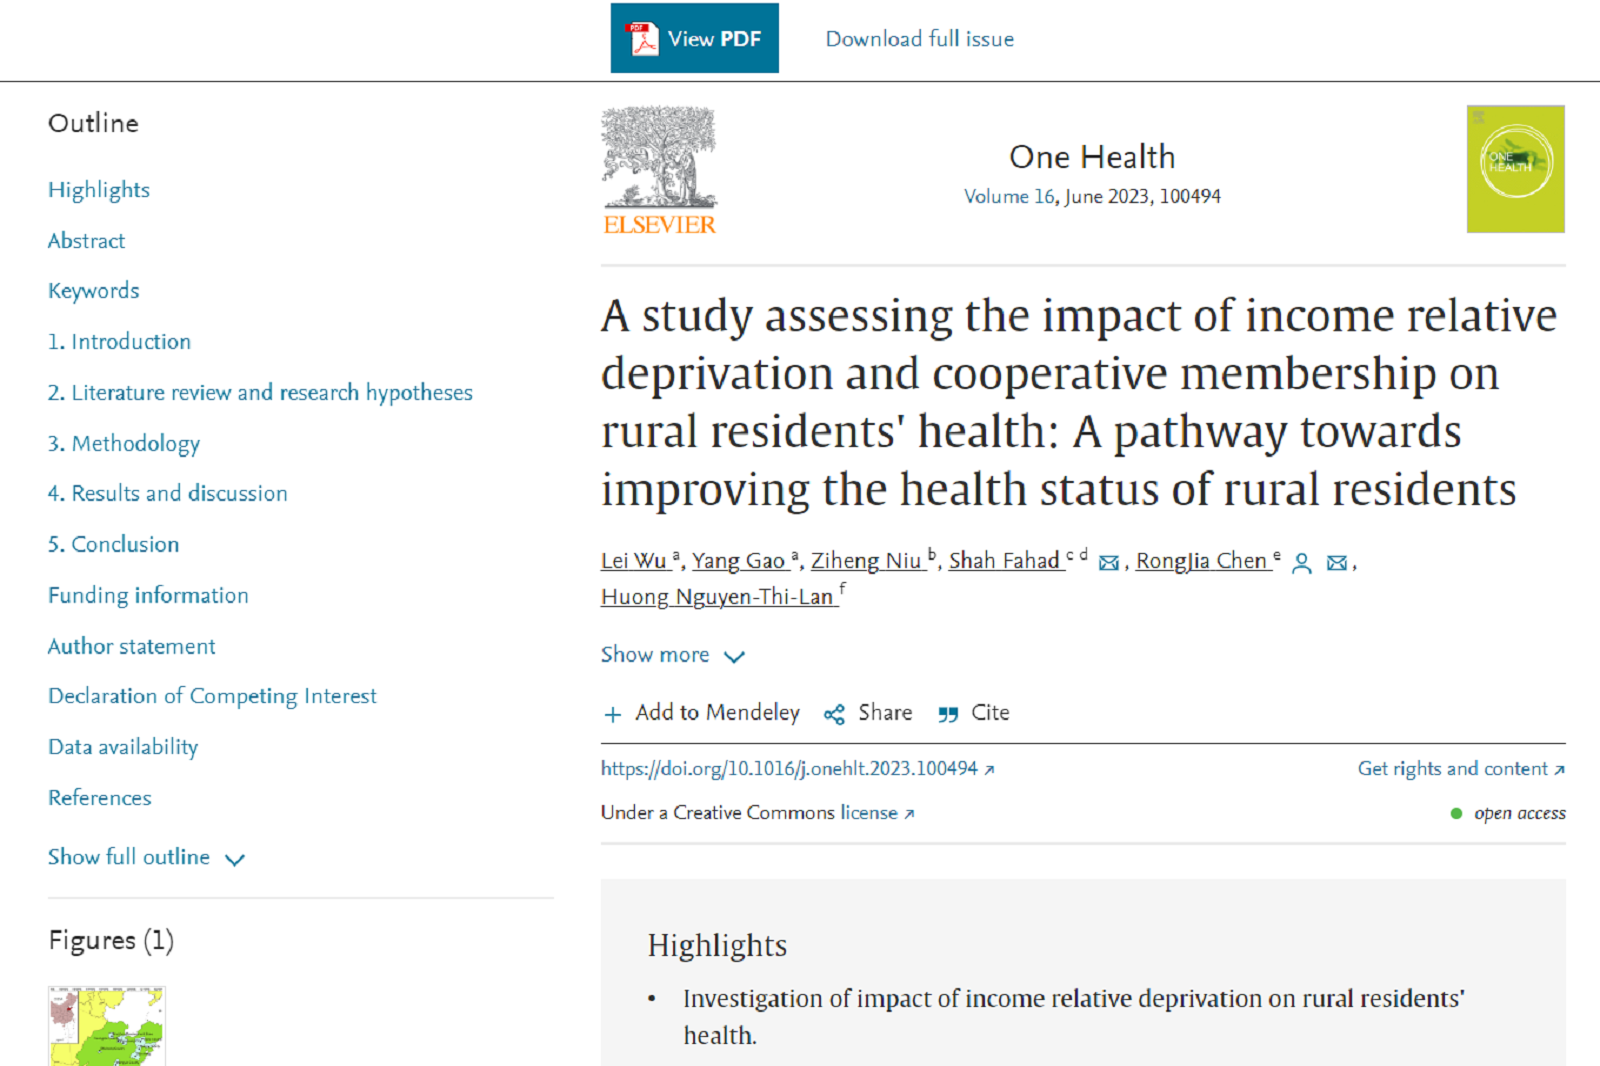 Nghiên cứu đánh giá tác động của sự thiếu thốn tương đối về thu nhập cá nhân đối với sức khỏe của cư dân nông thôn: Cách thức hướng tới cải thiện tình trạng sức khỏe của cư dân nông thôn